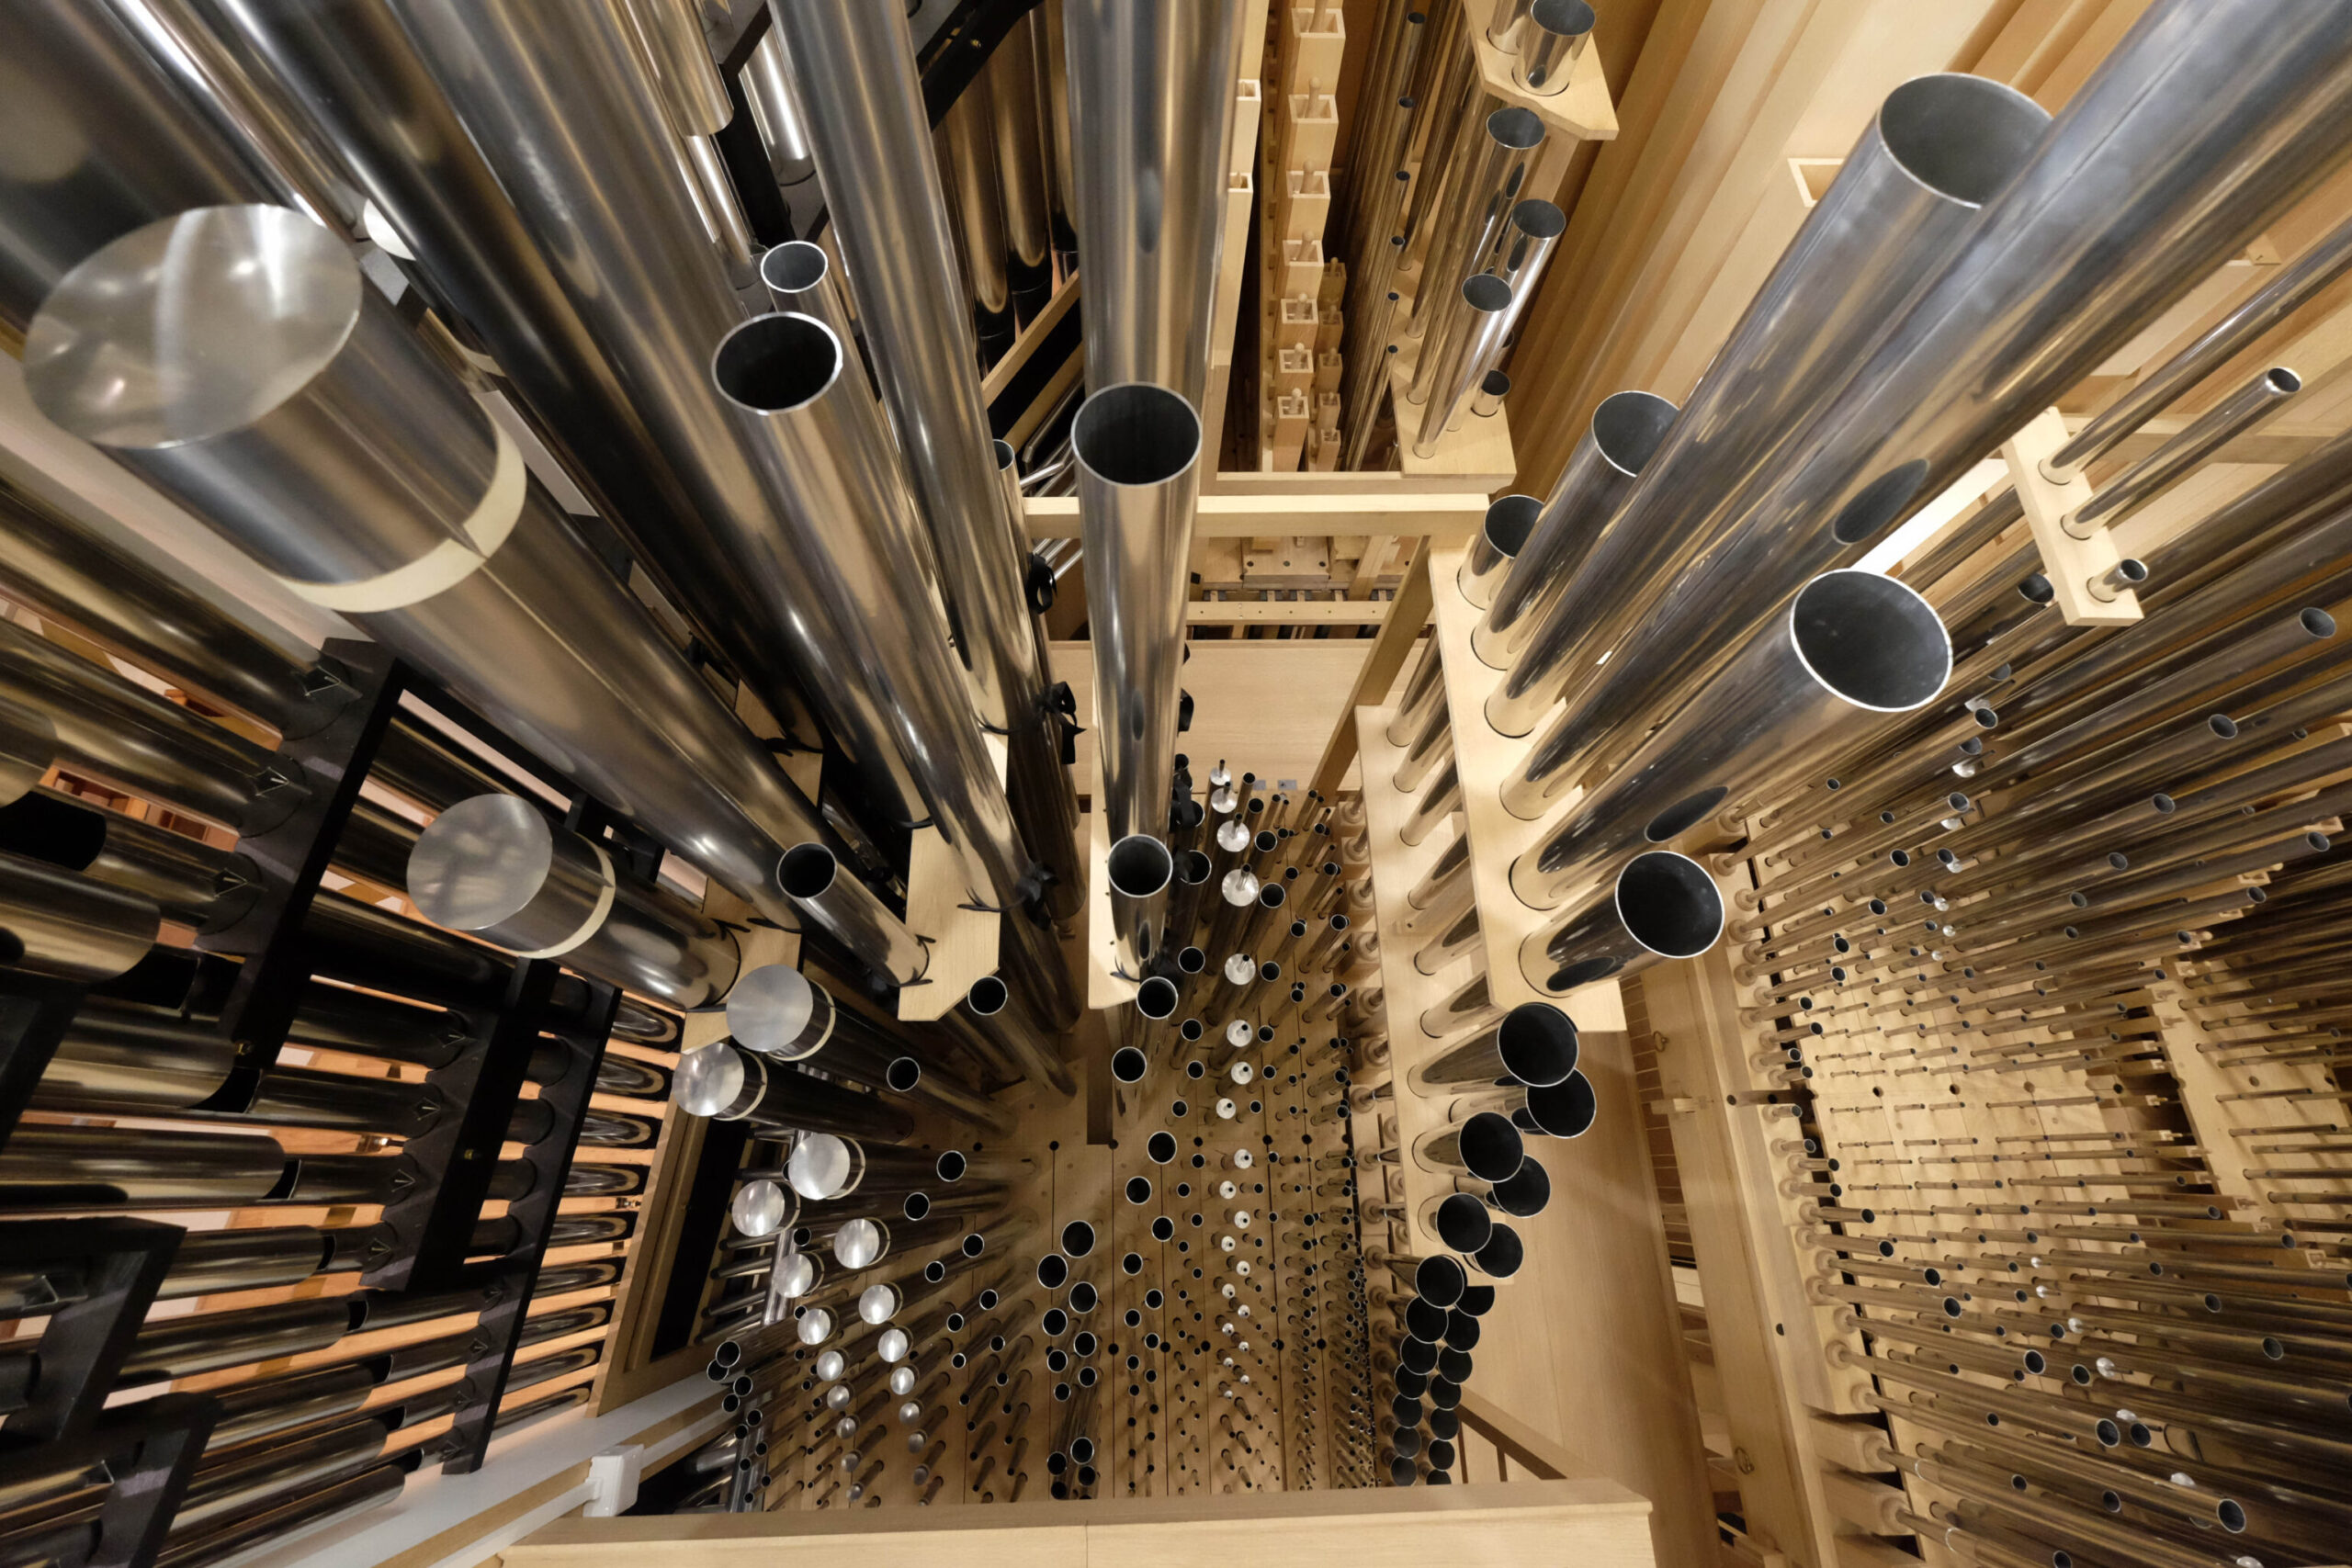 Blick von oben in die Metallpfeifen einer Orgel